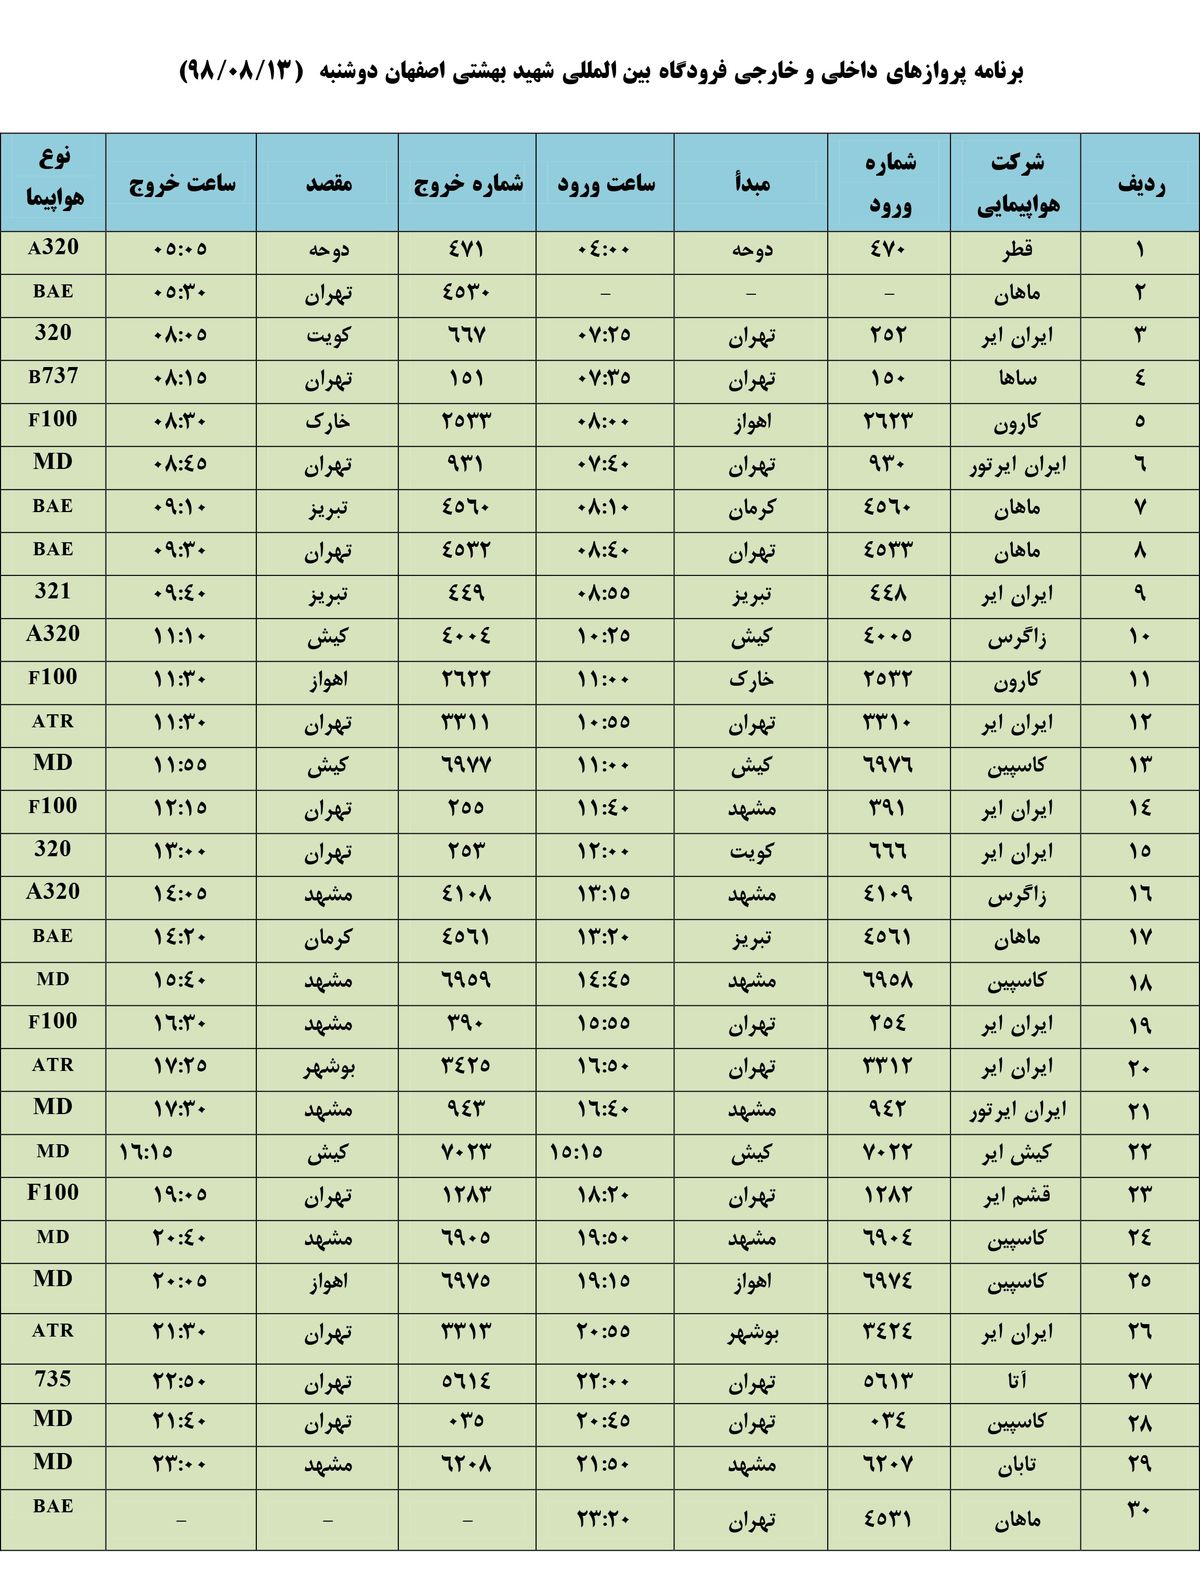 فهرست پروازهای فرودگاه بین المللی شهید بهشتی اصفهان،دوشنبه 13 آبان